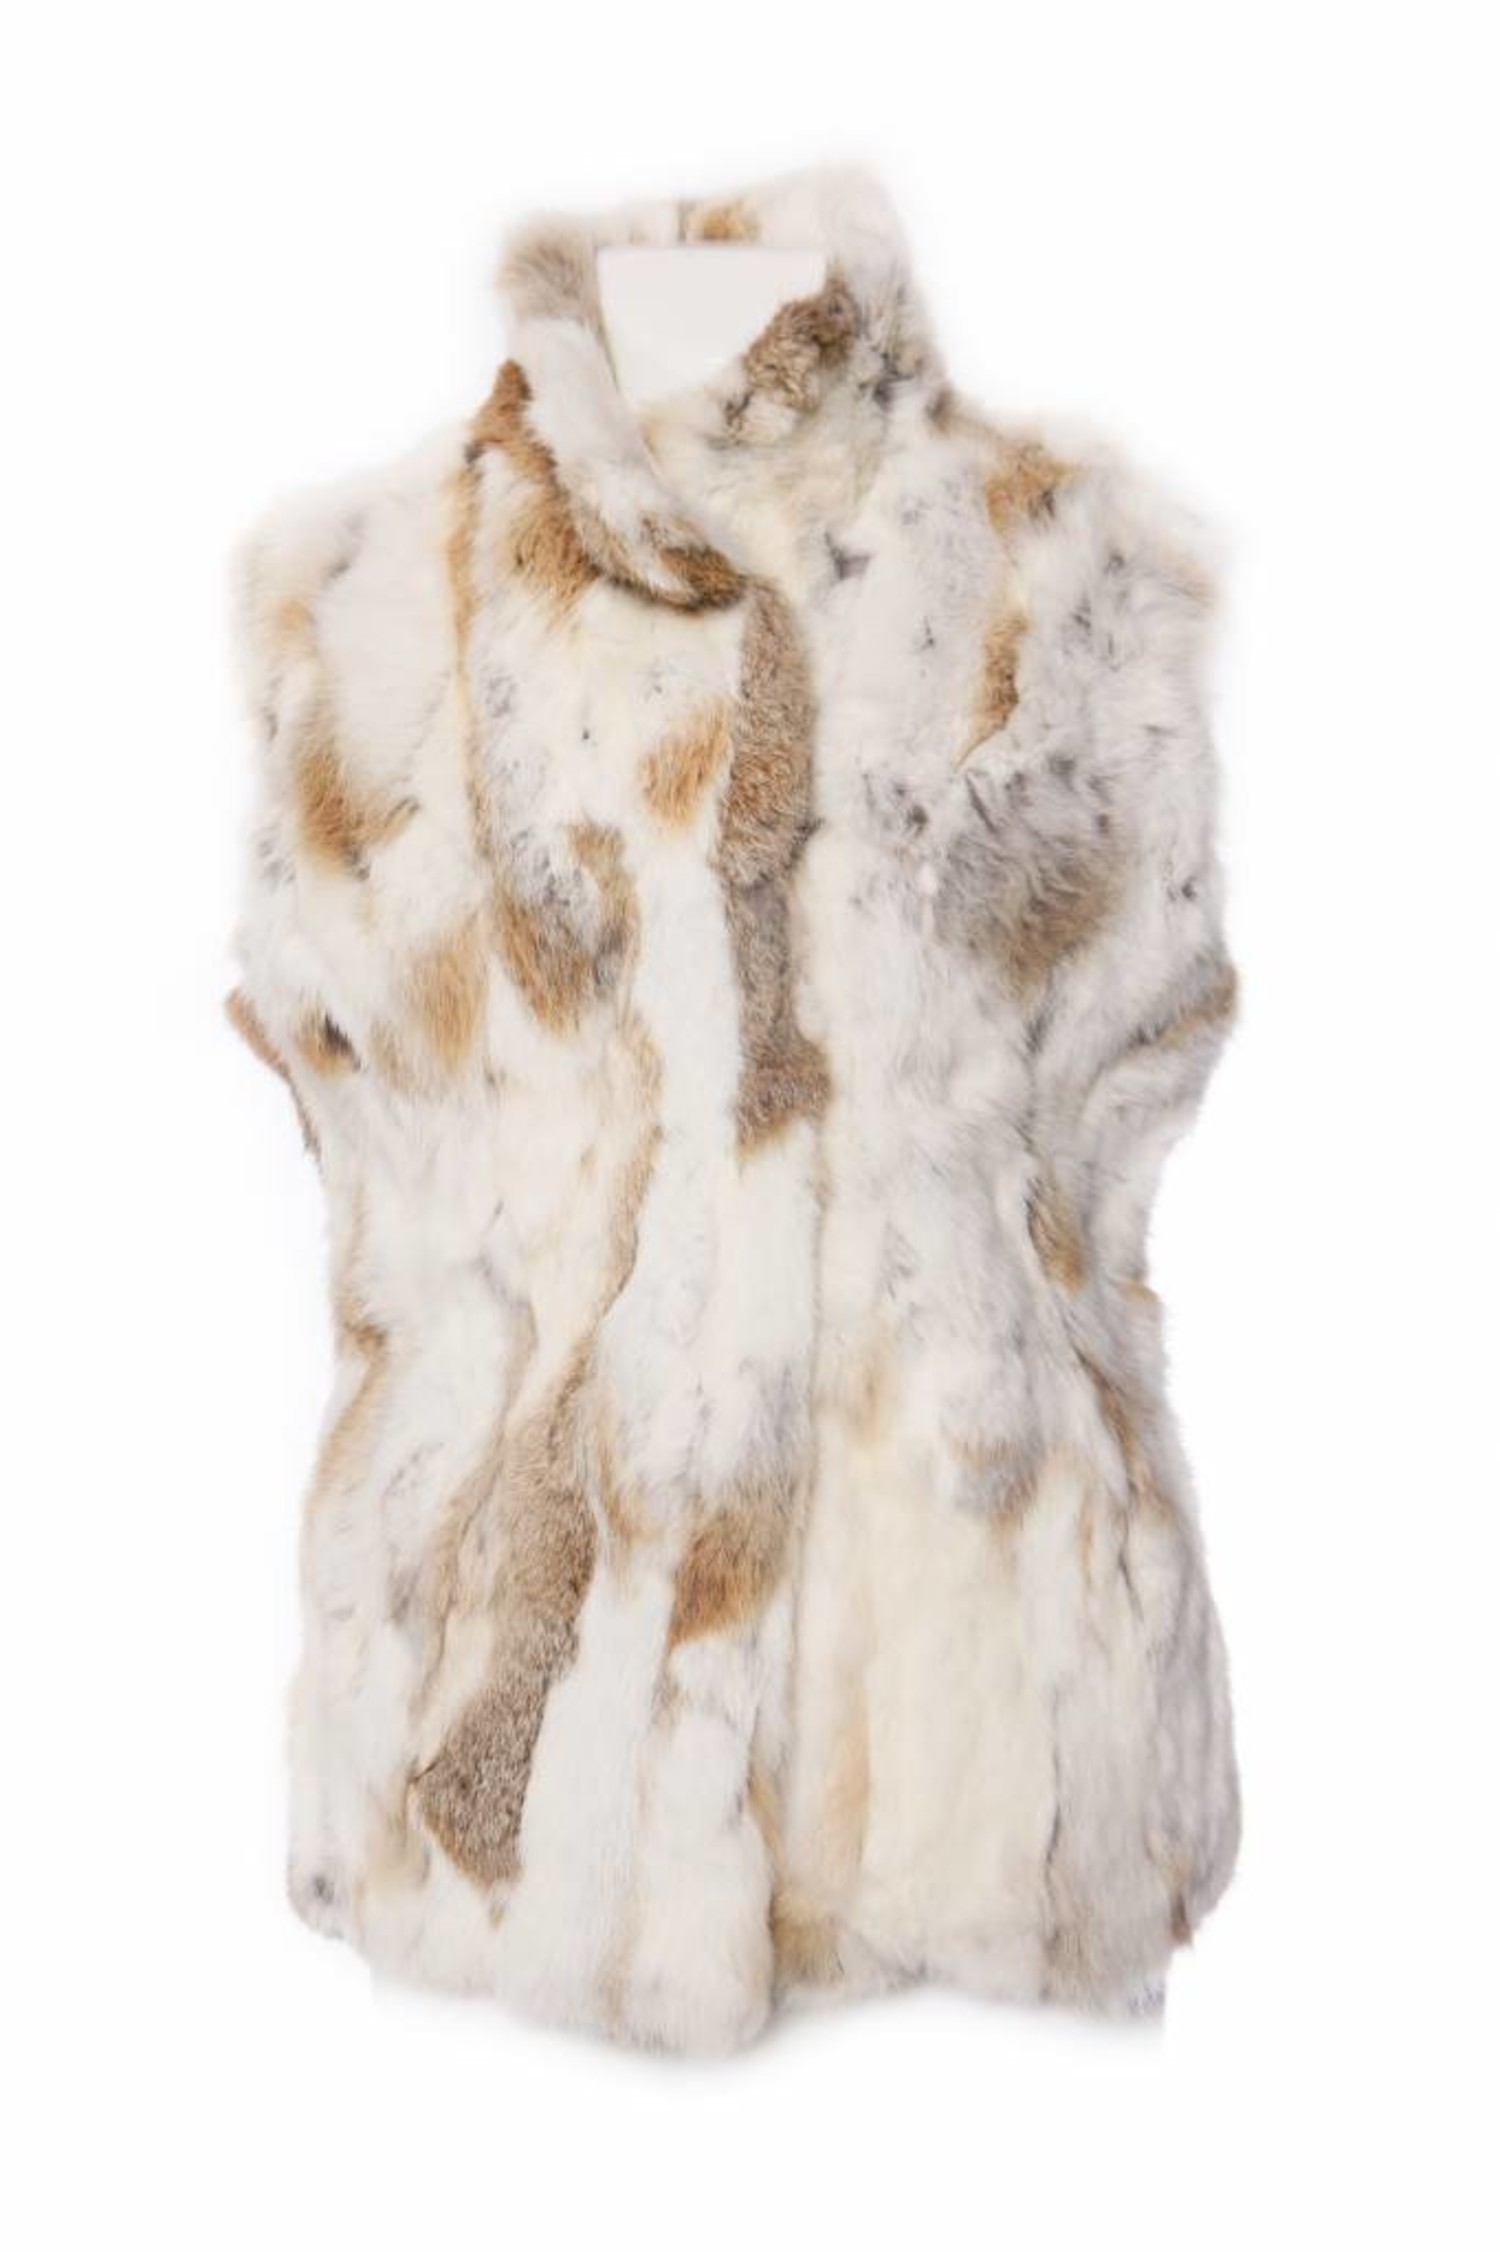 PETA Wouldn't Approve : $5000 LV Rabbit Fur Vest.